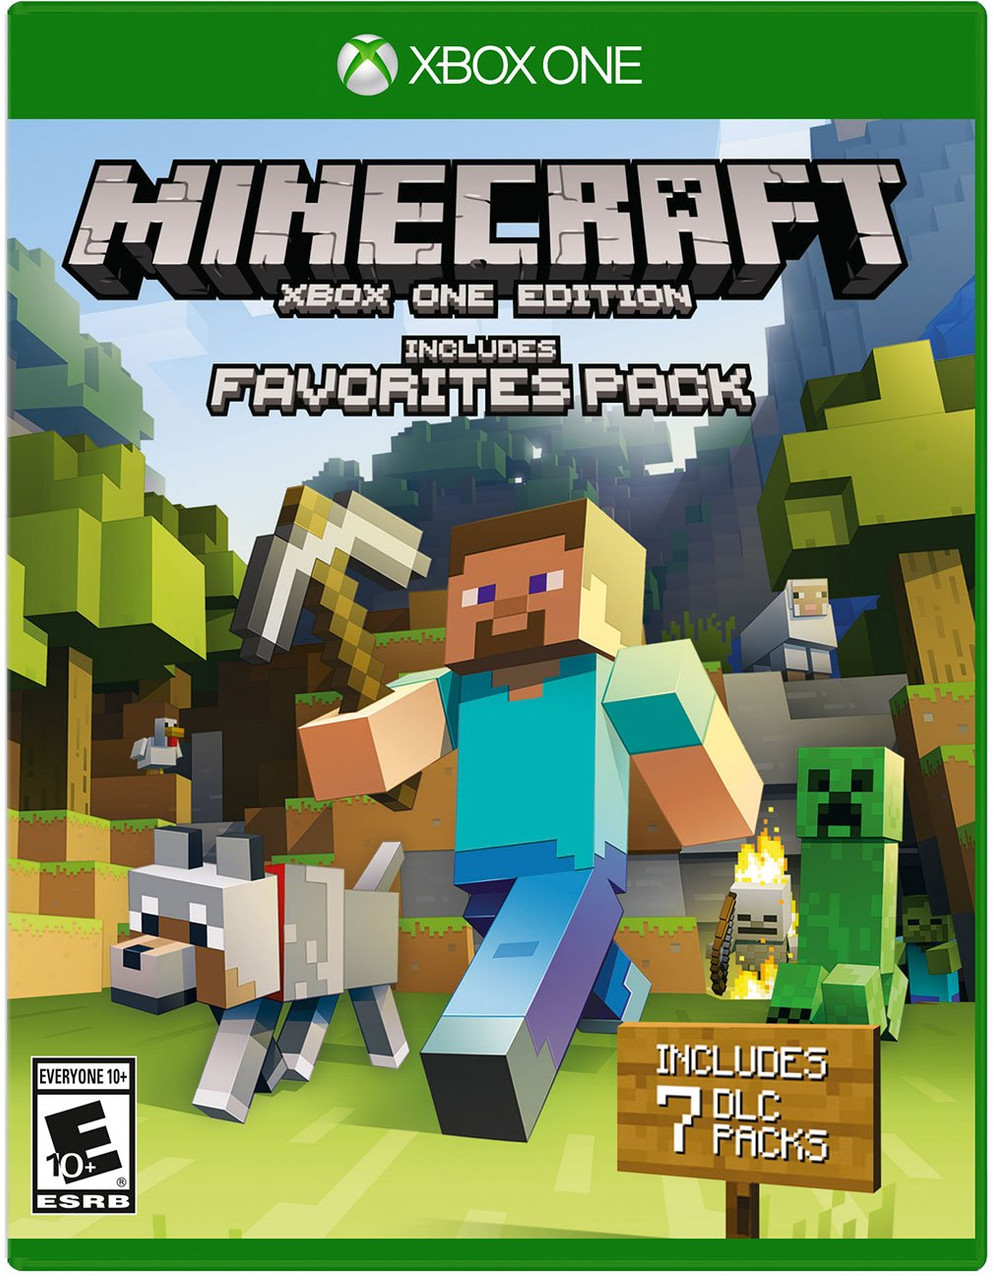 Used Minecraft Xbox 360 (Used) 